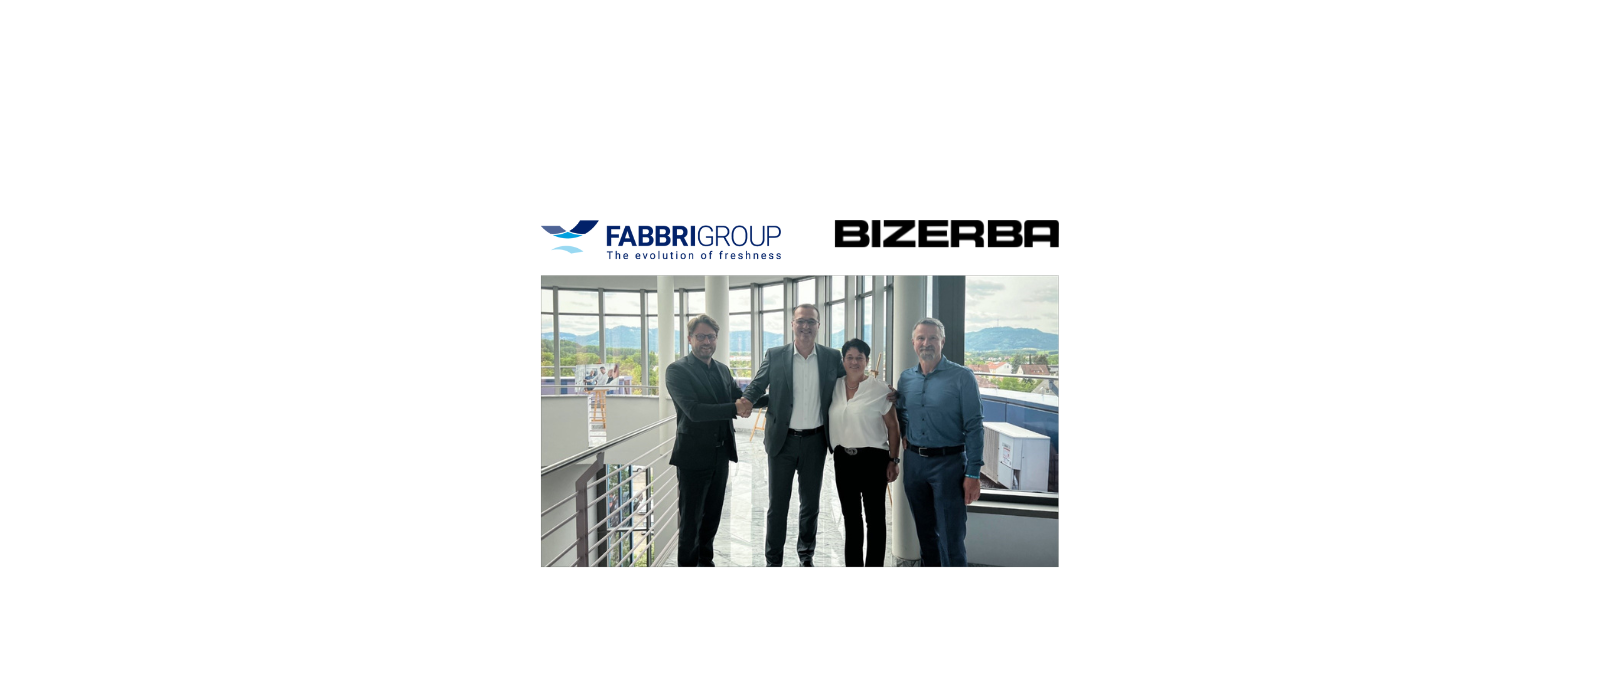 Gruppo Fabbri e Bizerba sviluppano innovative soluzioni combinate e integrate per il confezionamento con film estensibile